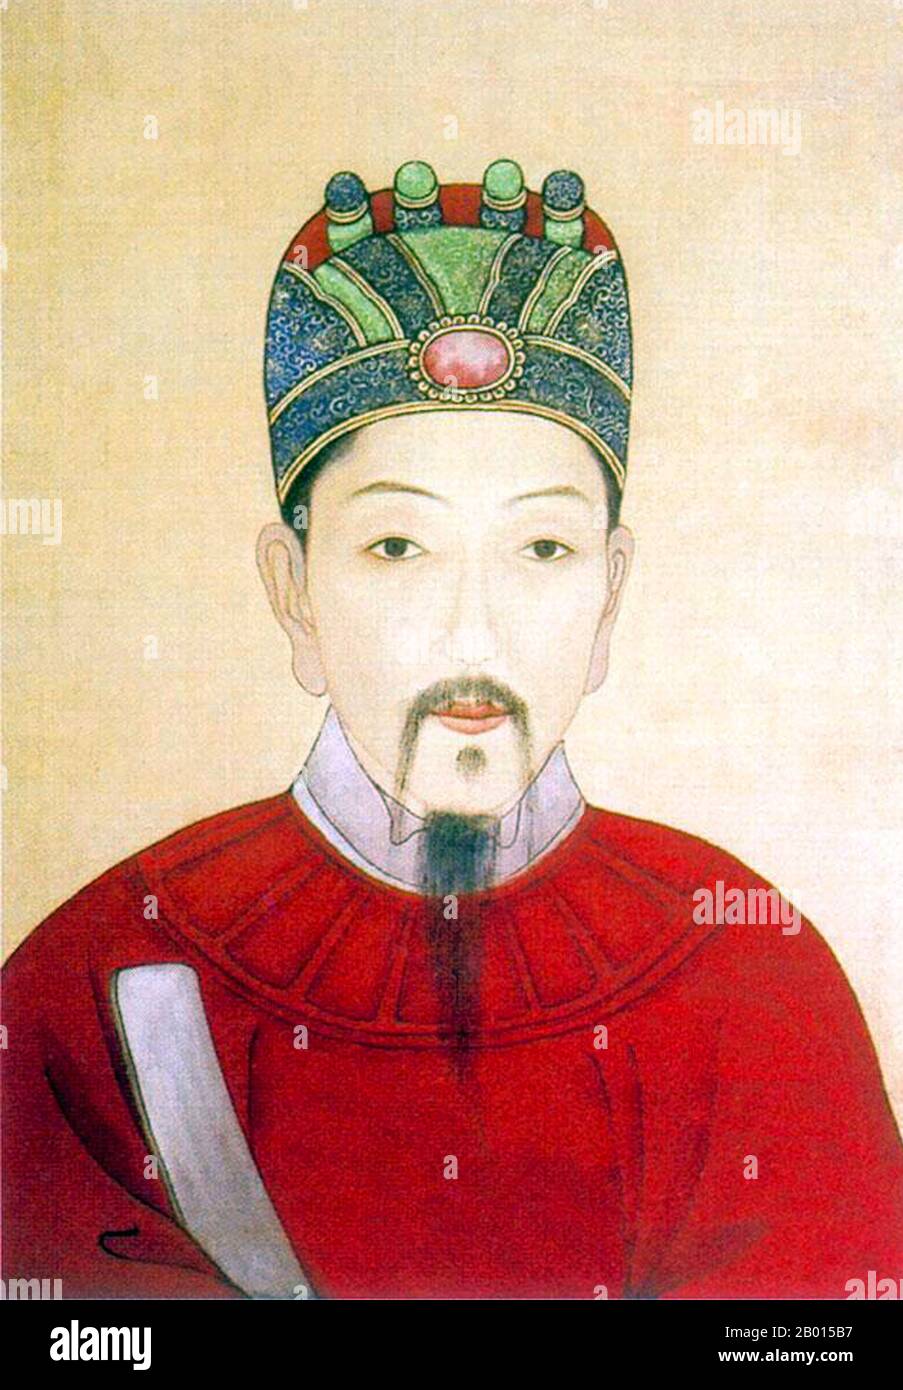 Yuan Chonghuan (6 juin 1584 – 22 septembre 1630), Ming général et martyr. Portrait, c. xviie siècle. Yuan Chonghuan était un patriote et commandant militaire célèbre de la dynastie Ming qui a combattu les Manchus en Liaoning. Il était connu pour avoir excellé dans la guerre d'artillerie et a réussi à intégrer les tactiques occidentales à l'est. La carrière militaire de yuan a atteint son apogée lorsqu'il a battu Nurhaci et l'armée manchurienne lors de la première bataille de Ningyuan. Le fils et successeur de Nurhaci, Huang Taiji, a été battu par lui lors de la deuxième bataille de Ningyuan. Yuan a été tragiquement exécuté sous de fausses accusations. Banque D'Images